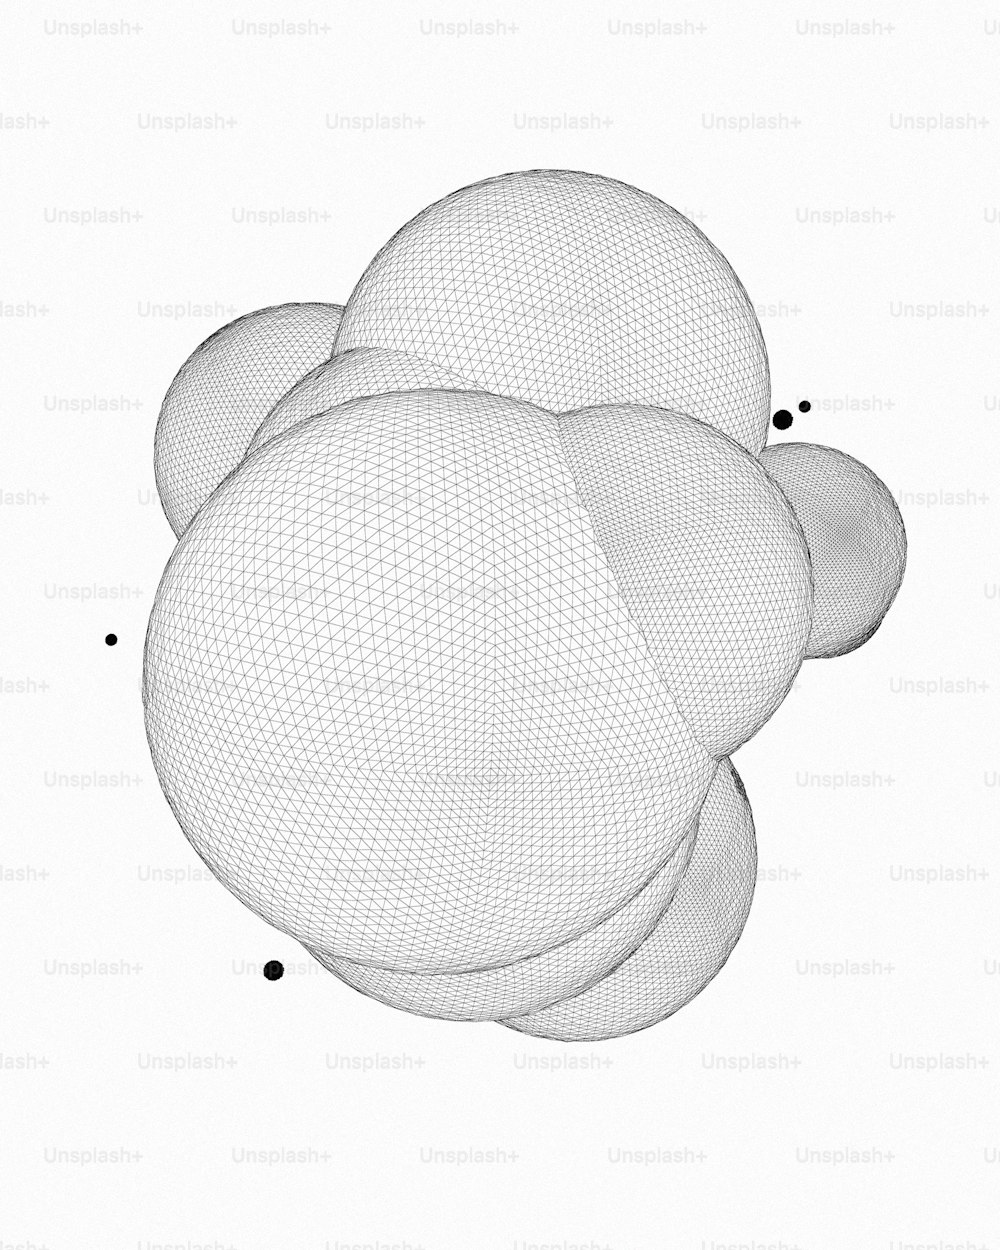 une image générée par ordinateur de trois sphères